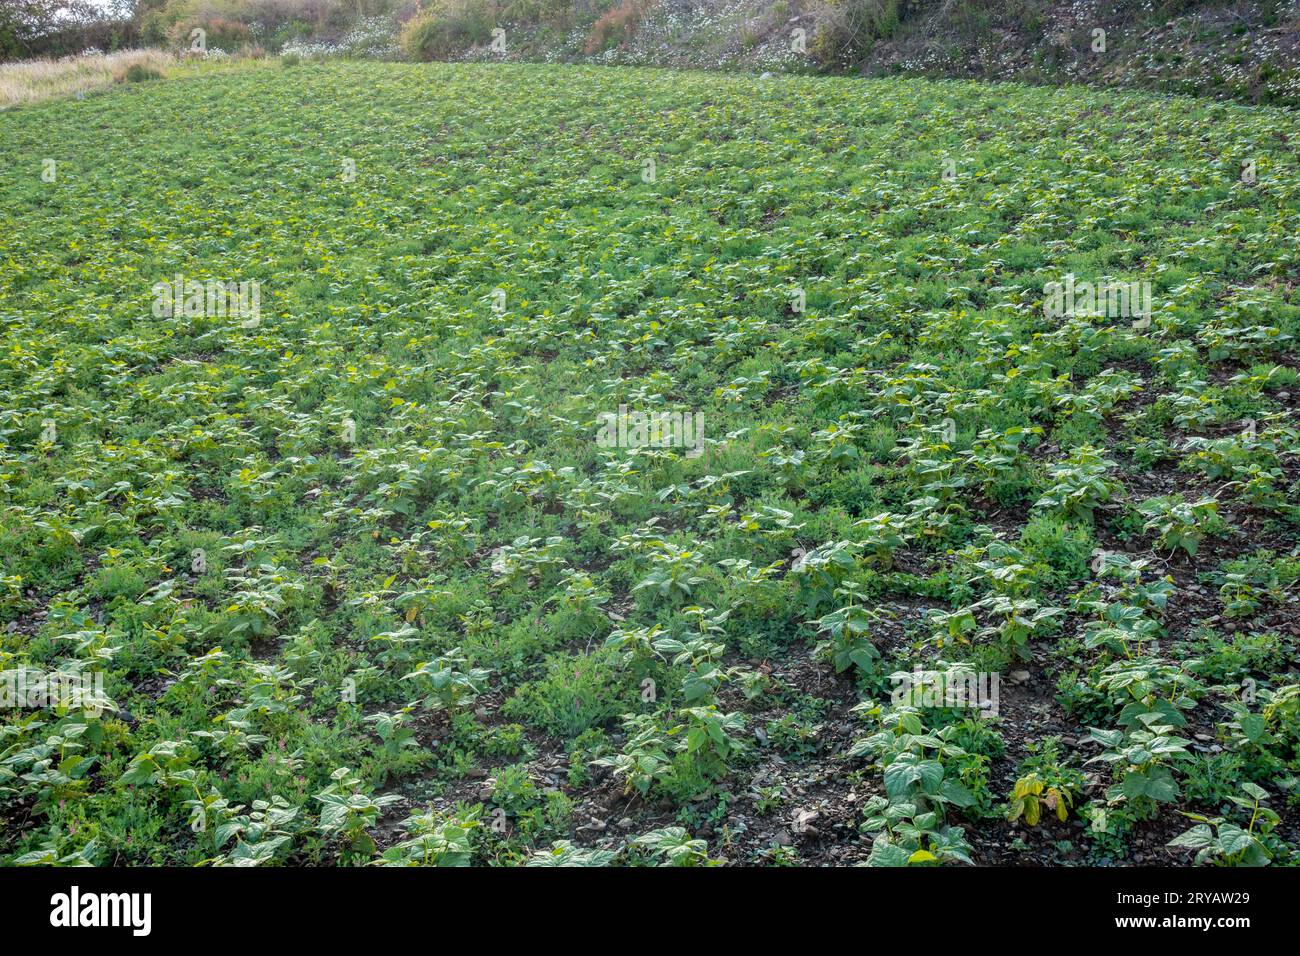 Anbau von Kidnierenbohnen, der Gemeinen Bohne (Phaseolus vulgaris). Die Biobaumplantage im Himalaya-Gebiet Uttarakhand. Stockfoto